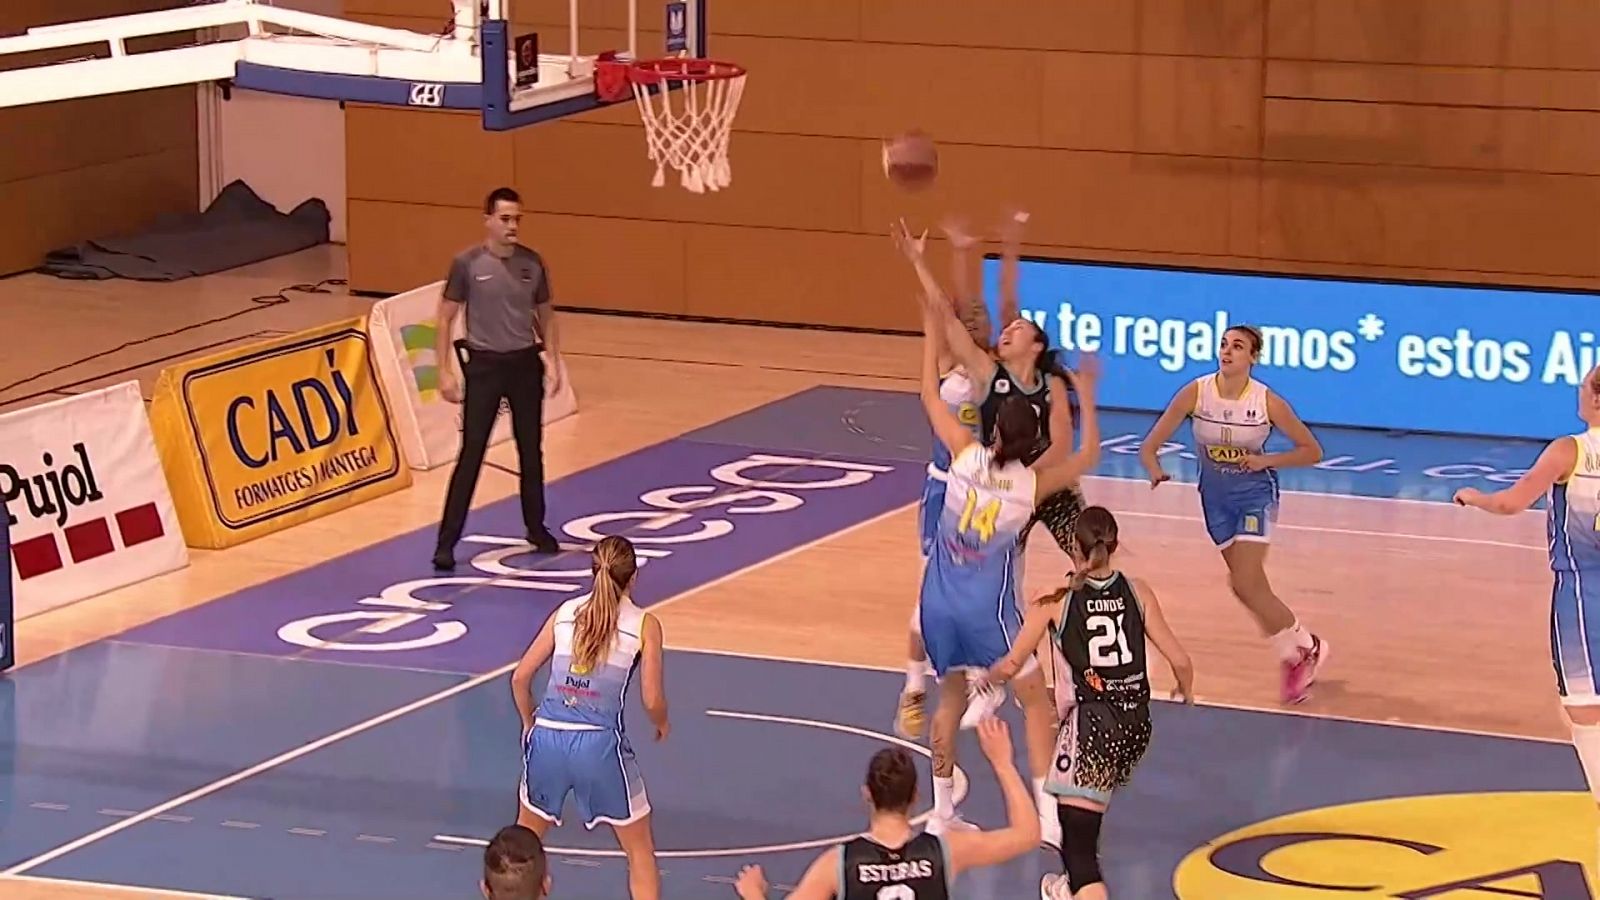 Baloncesto - Liga femenina Endesa. 13ª jornada: Cadí La Seu - Campus Promete, desde La Seu d'Urgell - RTVE.es